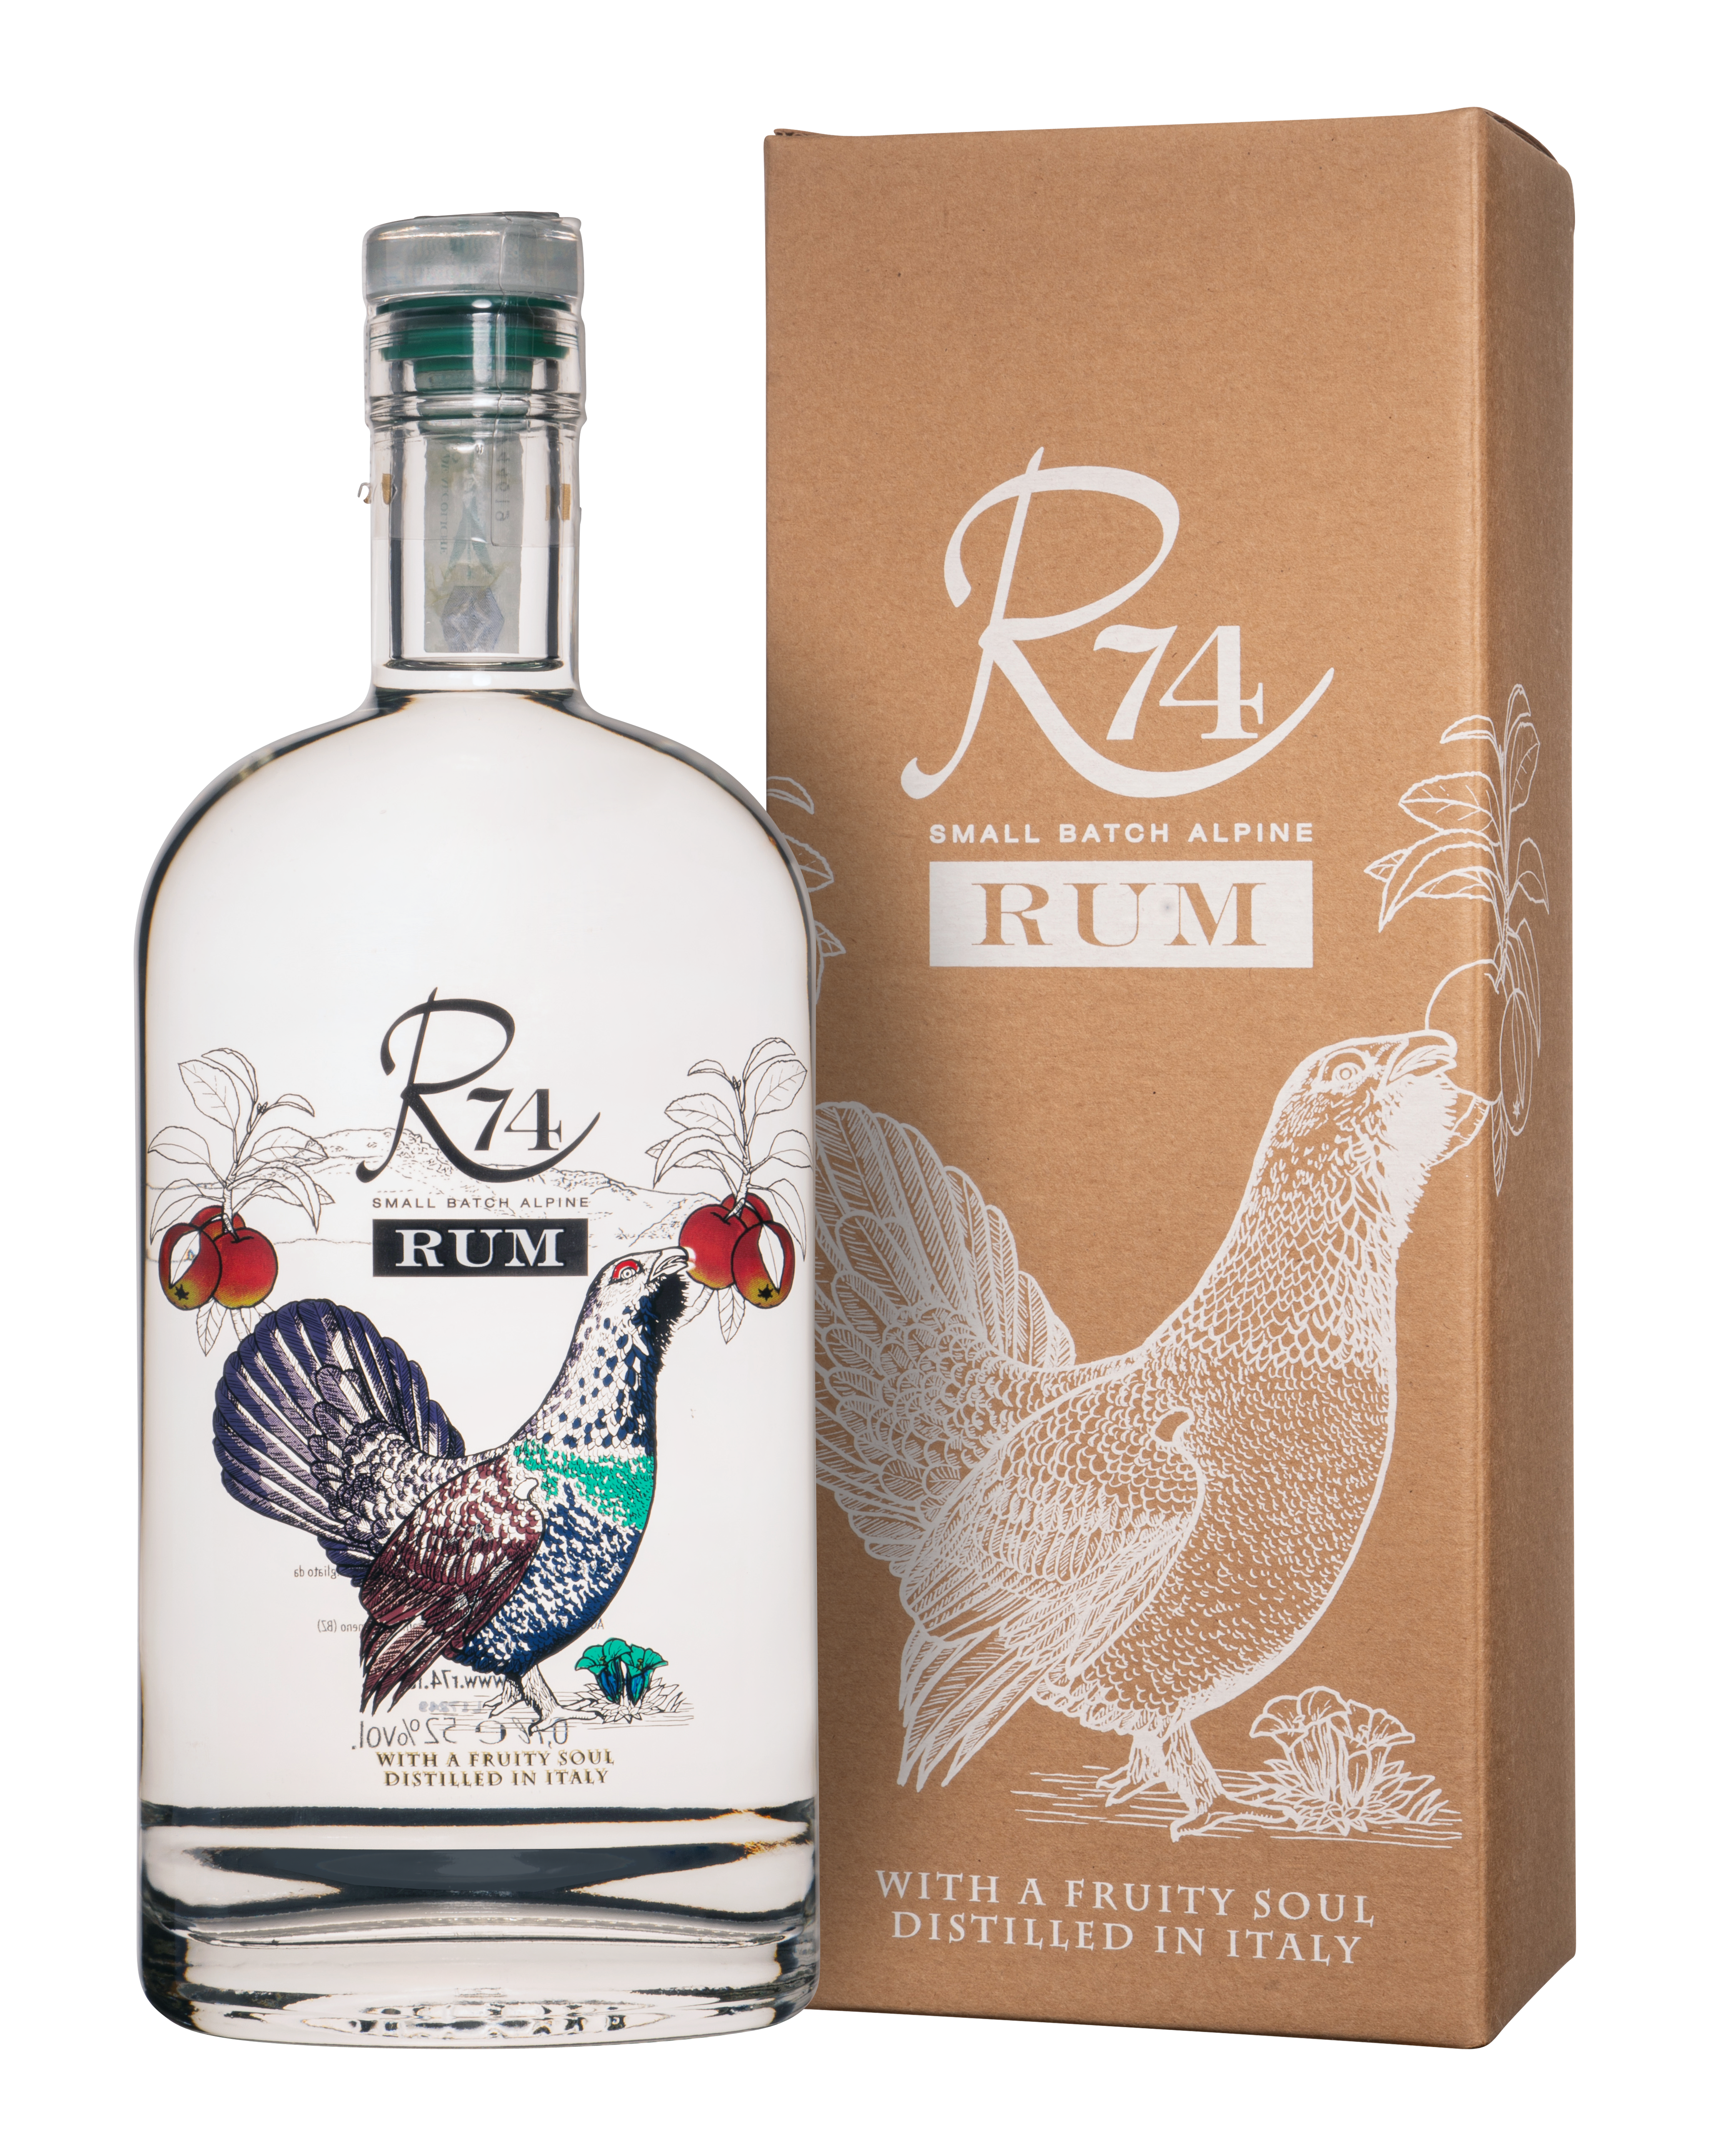 R74 Rum White